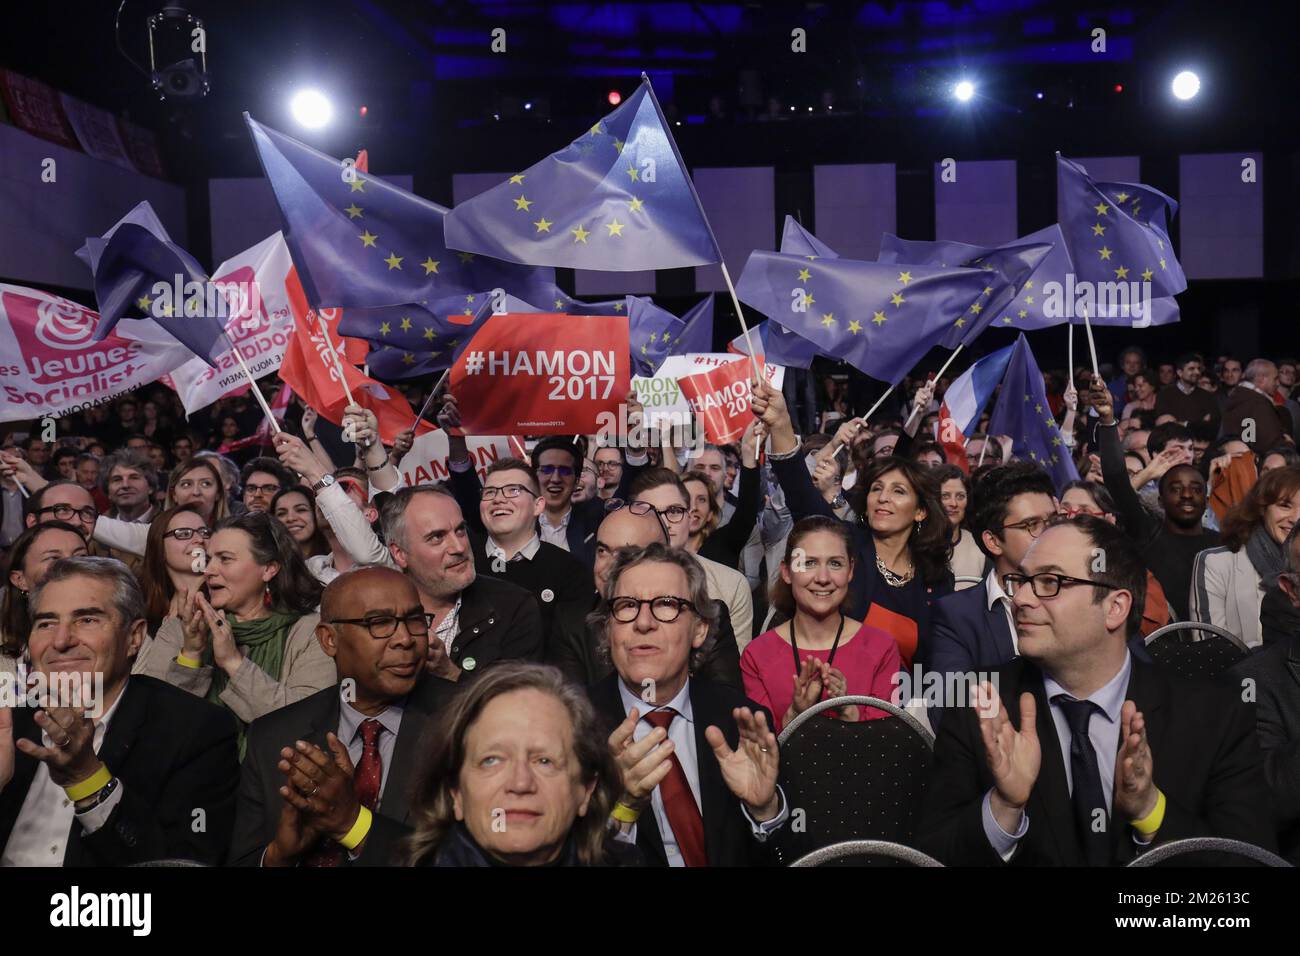 L'illustration montre une réunion avec le candidat français à l'élection présidentielle pour le parti socialiste français (PS) de gauche Benoit Hamon, mardi 21 mars 2017, à Bruxelles. BELGA PHOTO THIERRY ROGE Banque D'Images